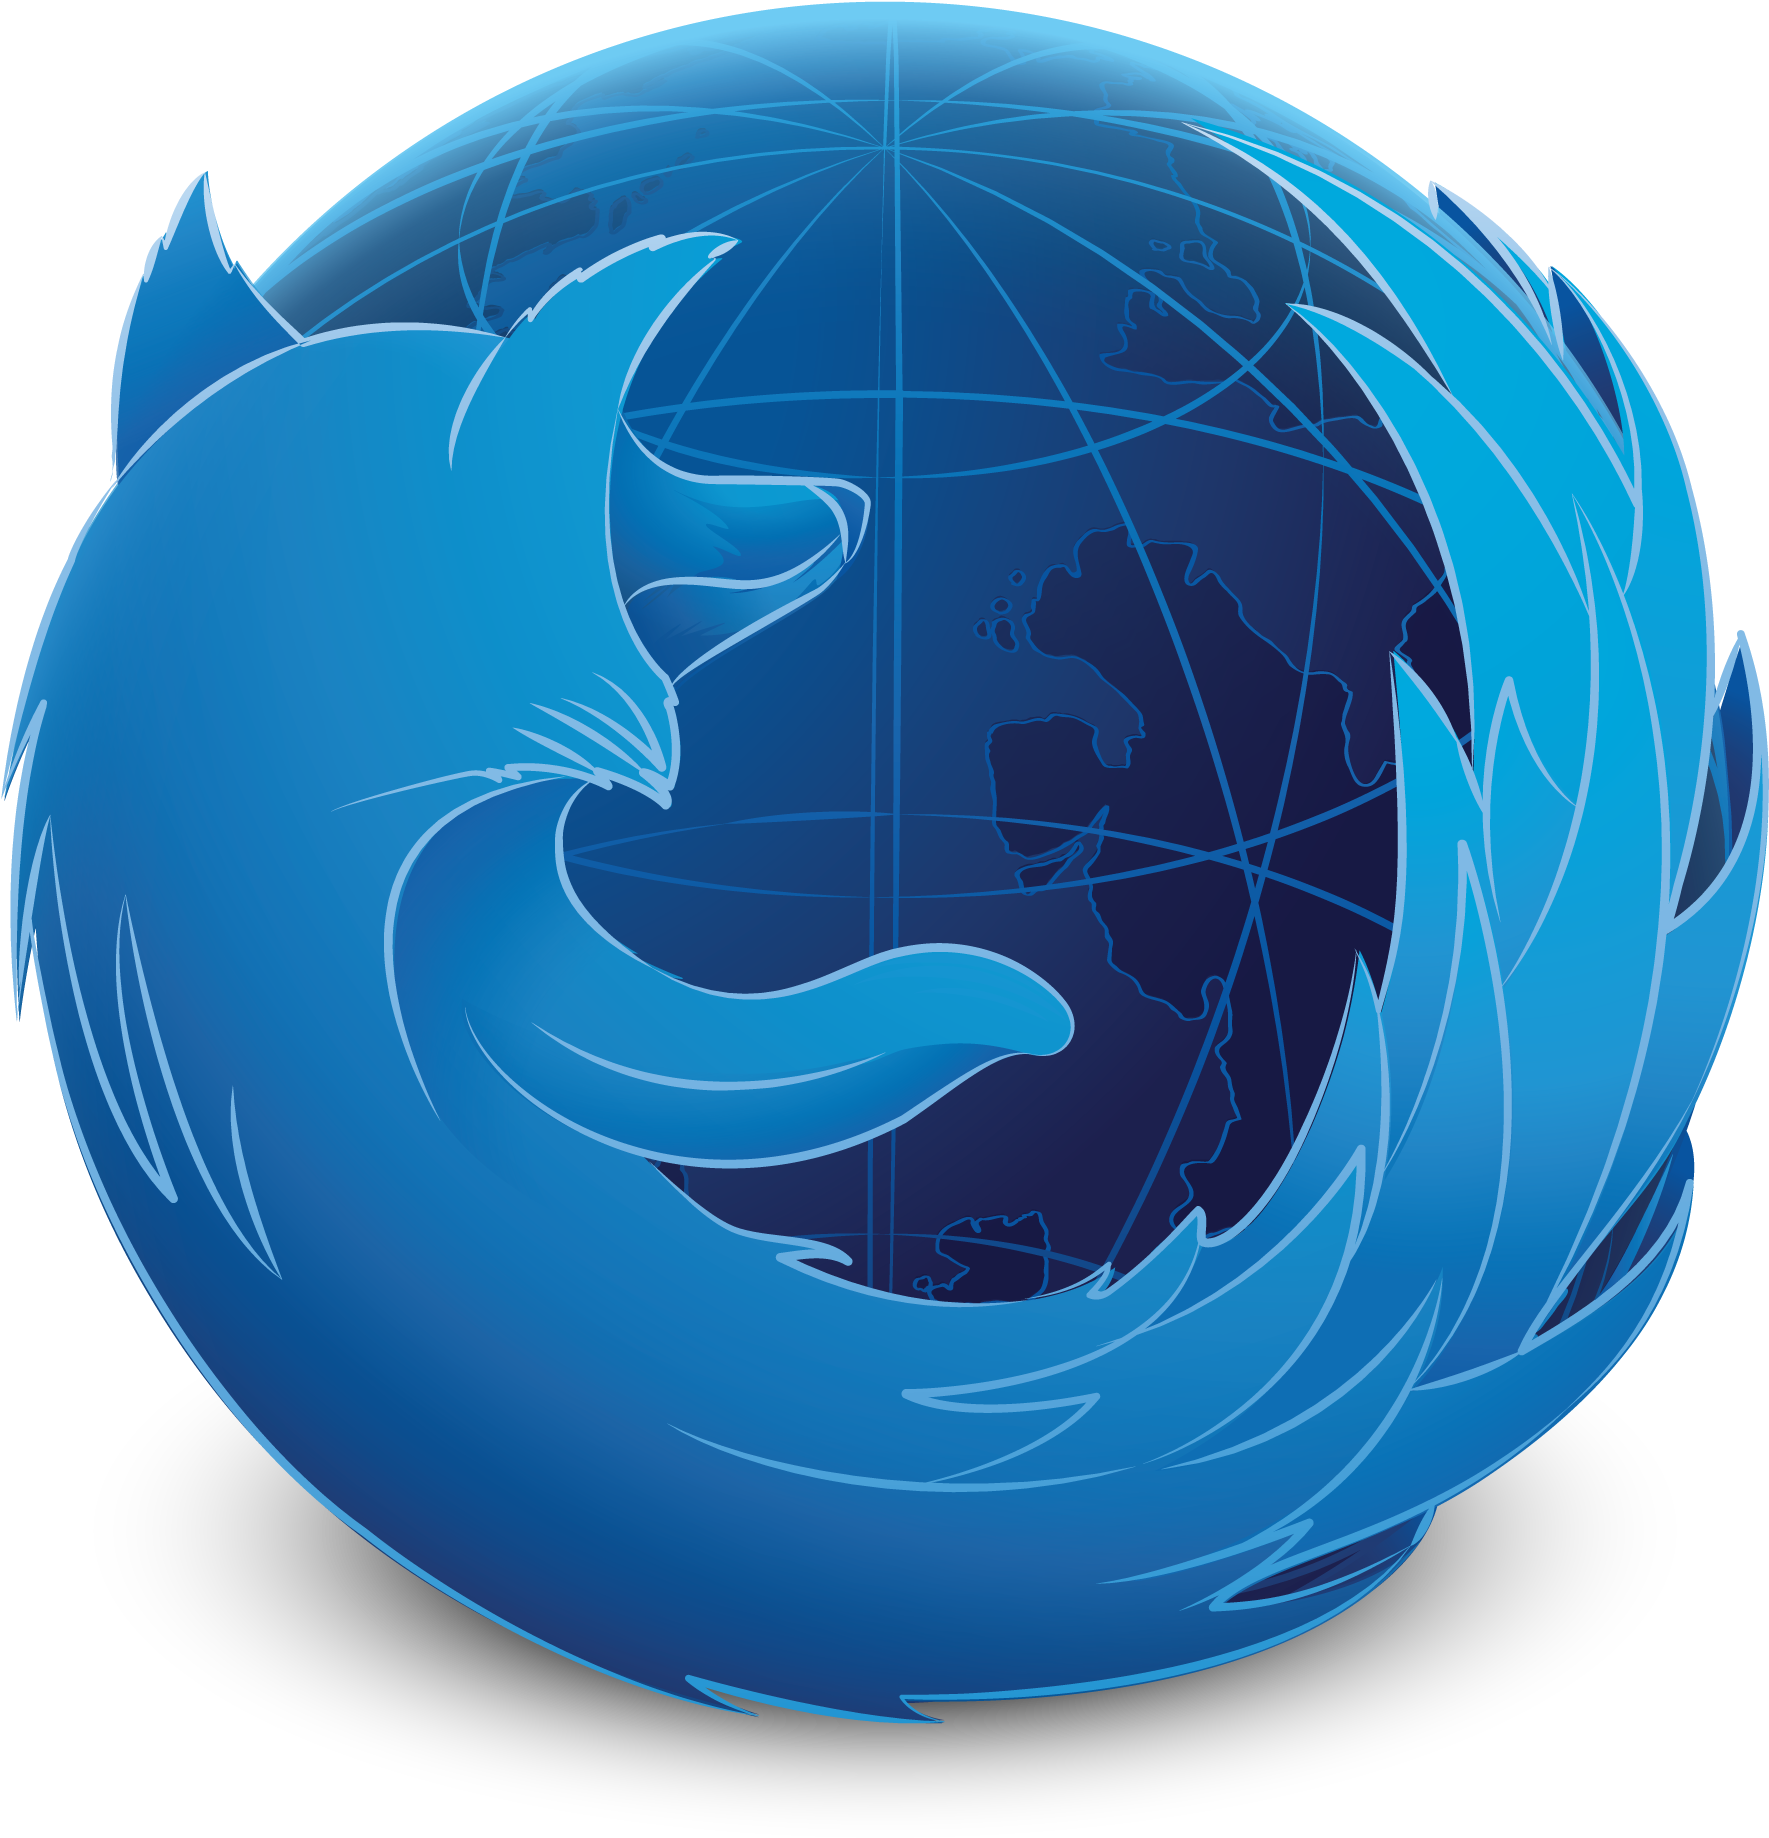 Get Firefox Developer Edition - Firefox Developer Edition (2485x2340)